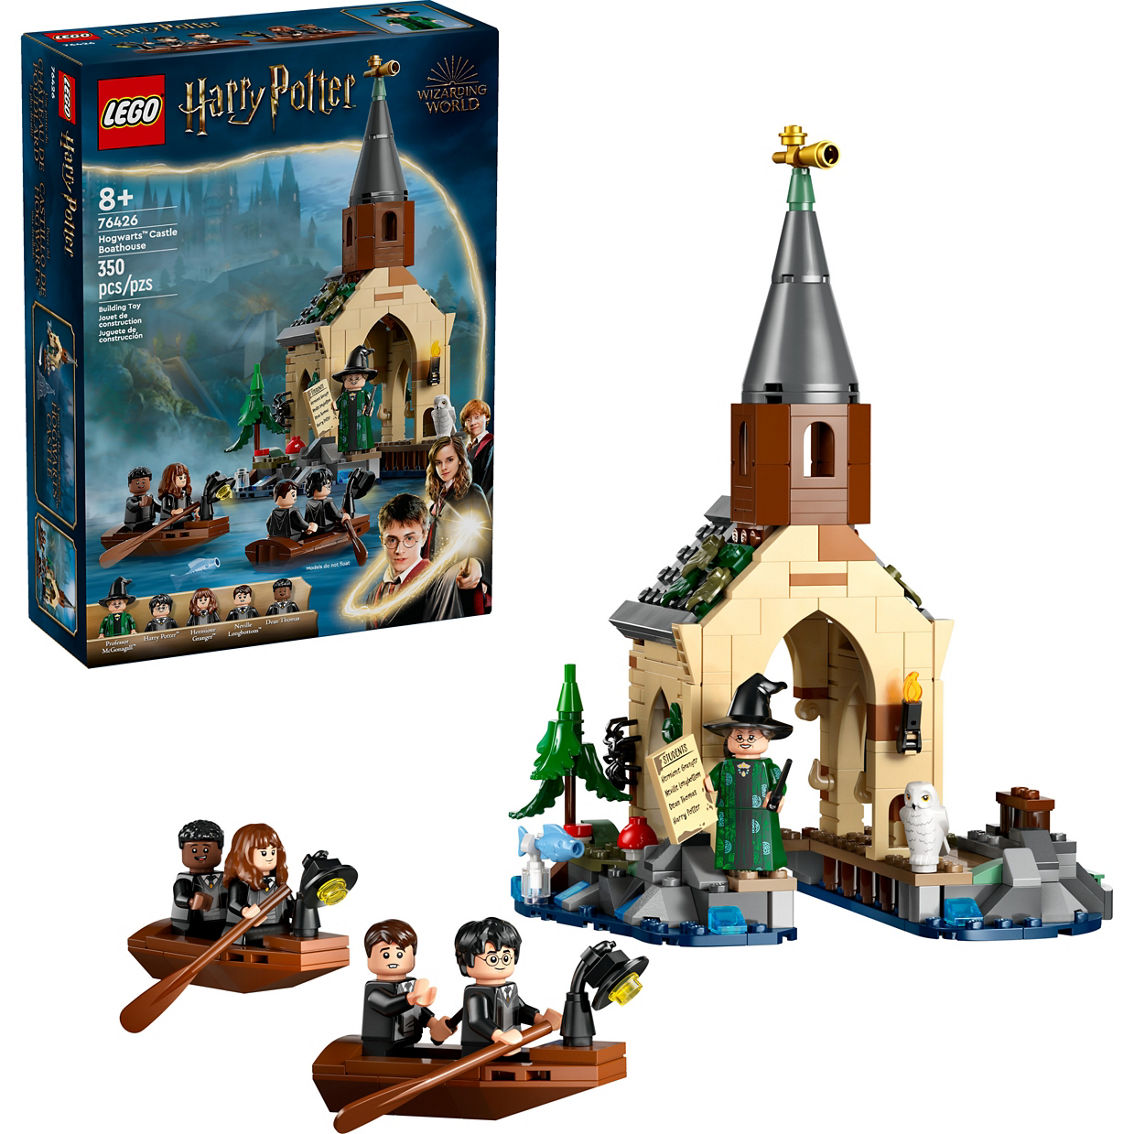 LEGO Harry Potter 76426 - Image 3 of 10